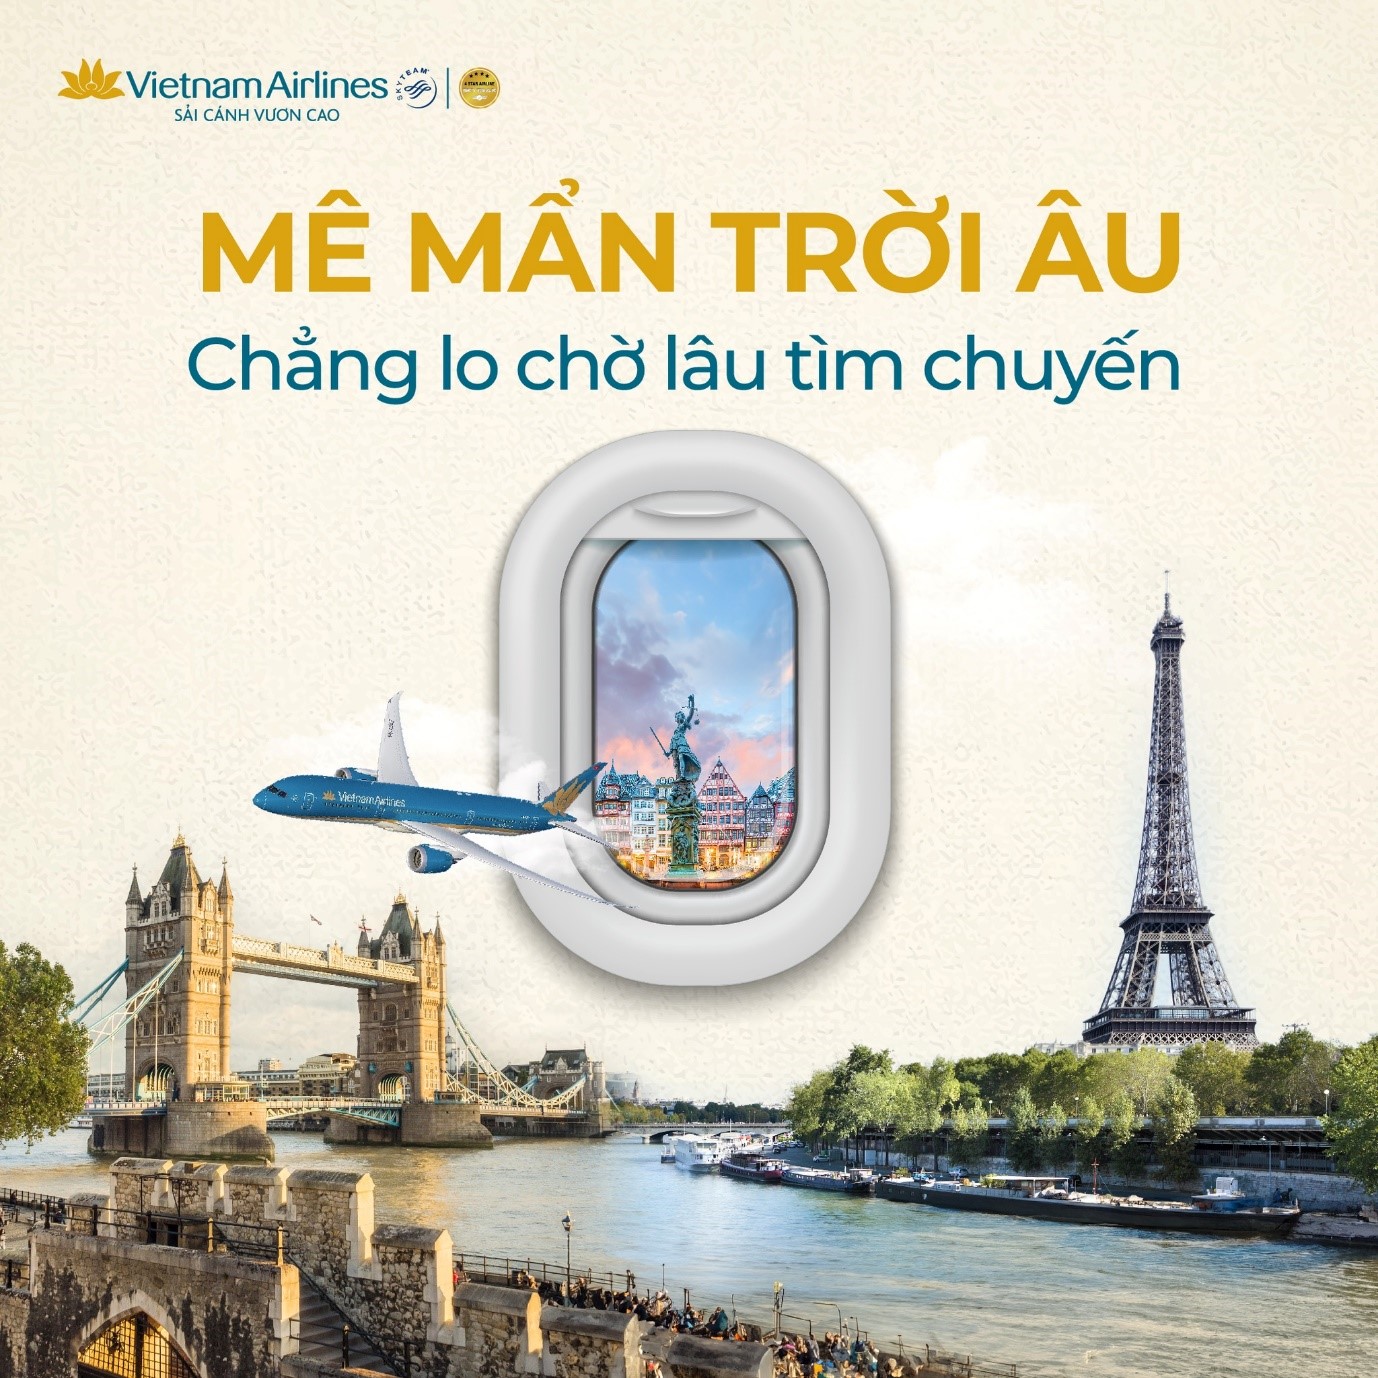 Khám phá trời Âu cùng Vietnam Airlines